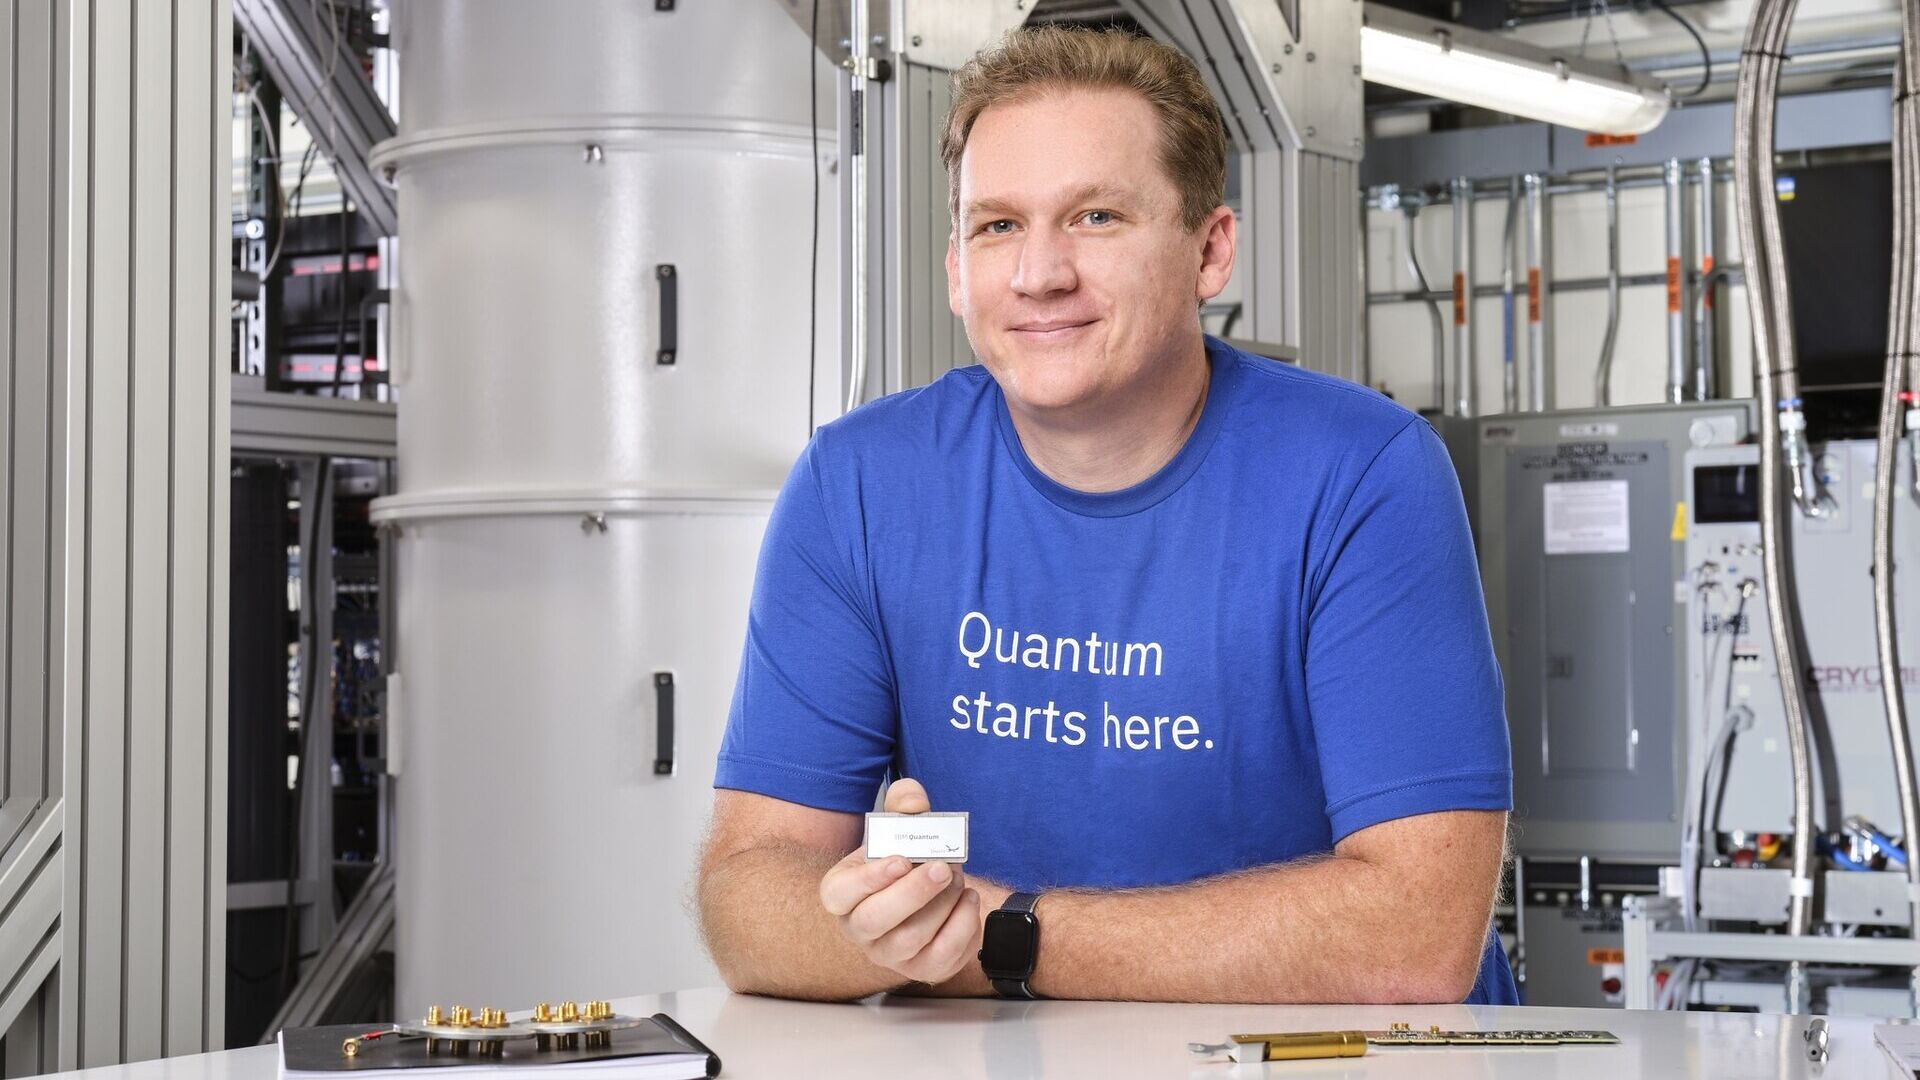 Джей Гамбетта — научный сотрудник и вице-президент IBM Quantum